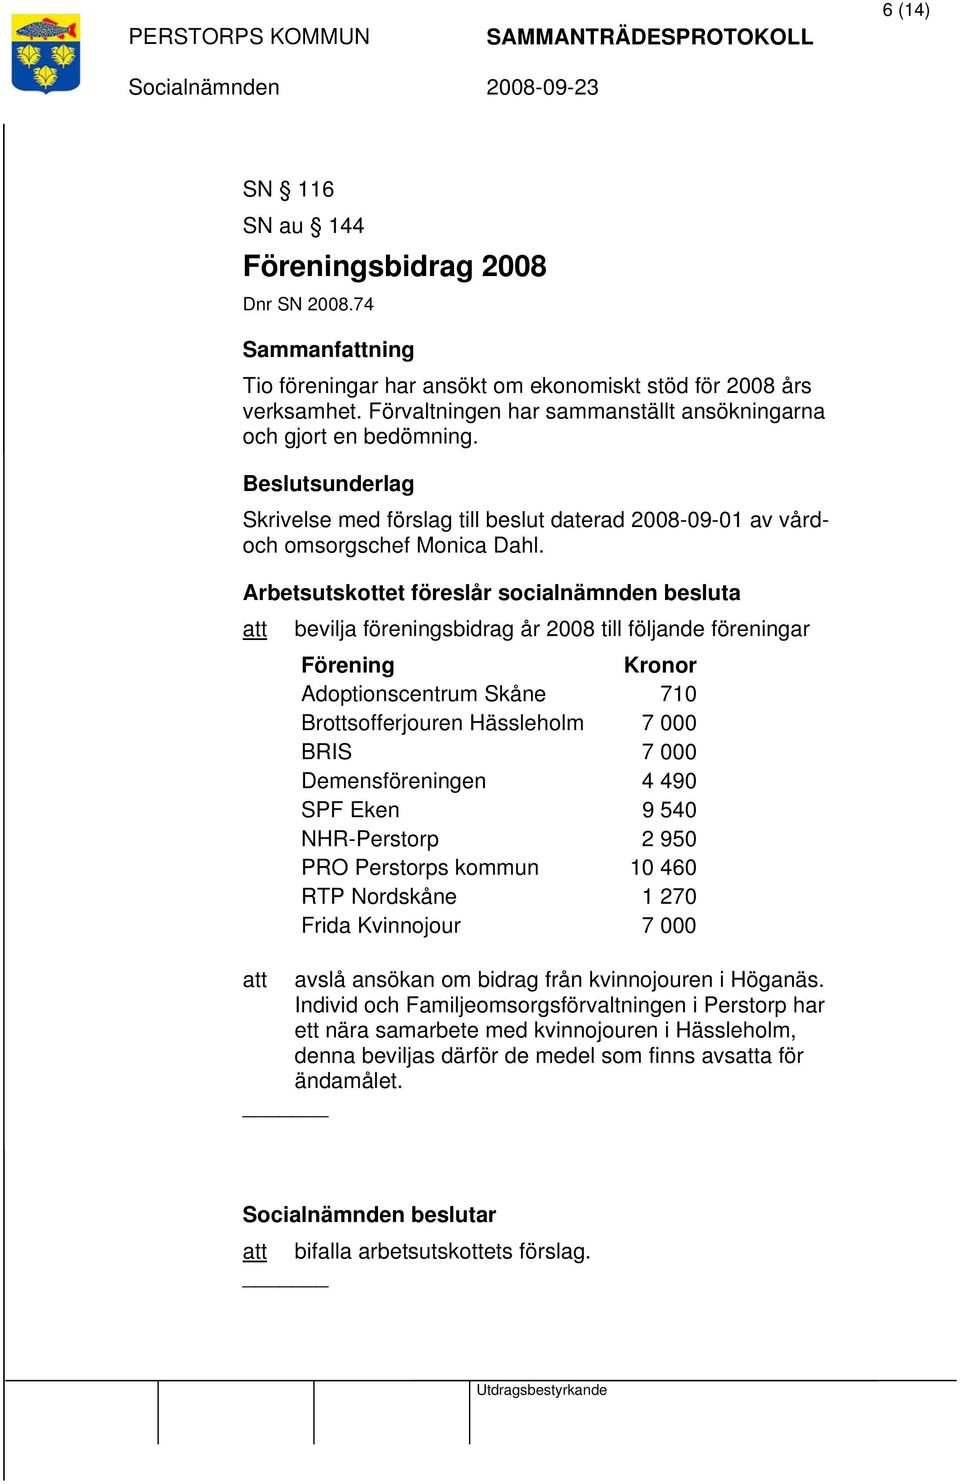 Arbetsutskottet föreslår socialnämnden besluta att bevilja föreningsbidrag år 2008 till följande föreningar Förening Kronor Adoptionscentrum Skåne 710 Brottsofferjouren Hässleholm 7 000 BRIS 7 000